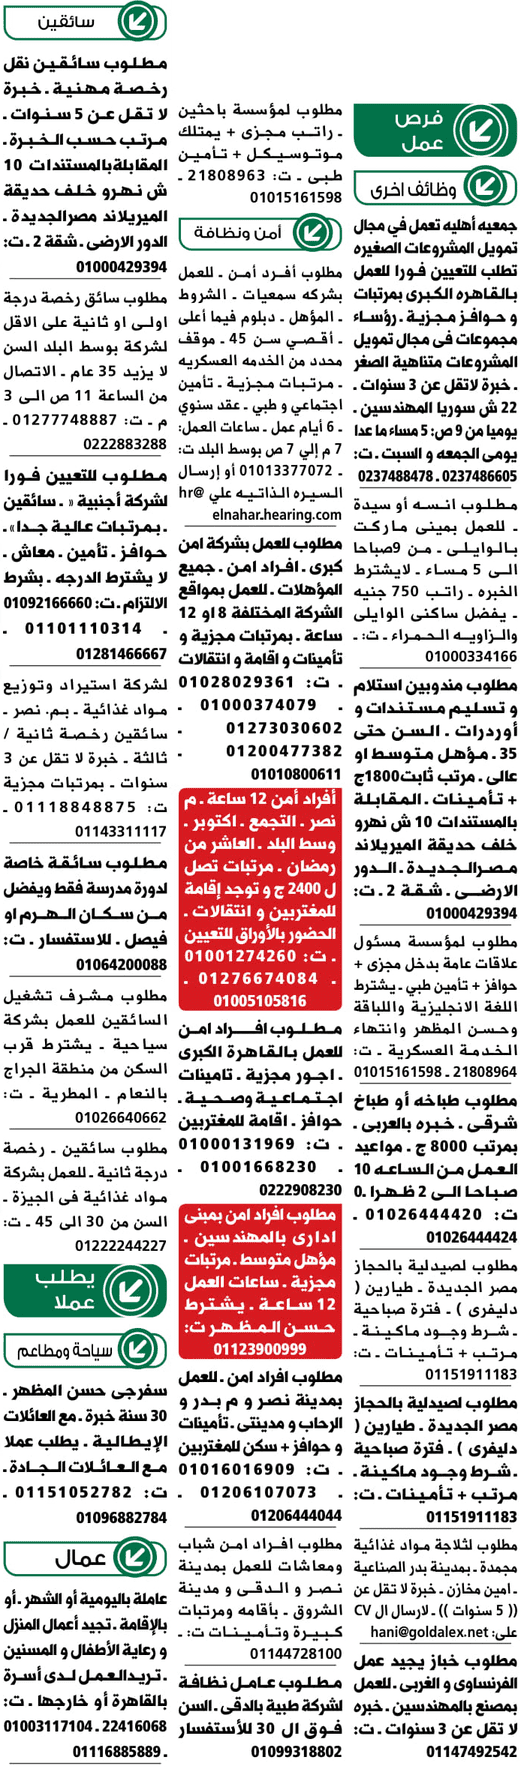 وظائف جريدة الوسيط المصرية اليوم 11/2/2019 13